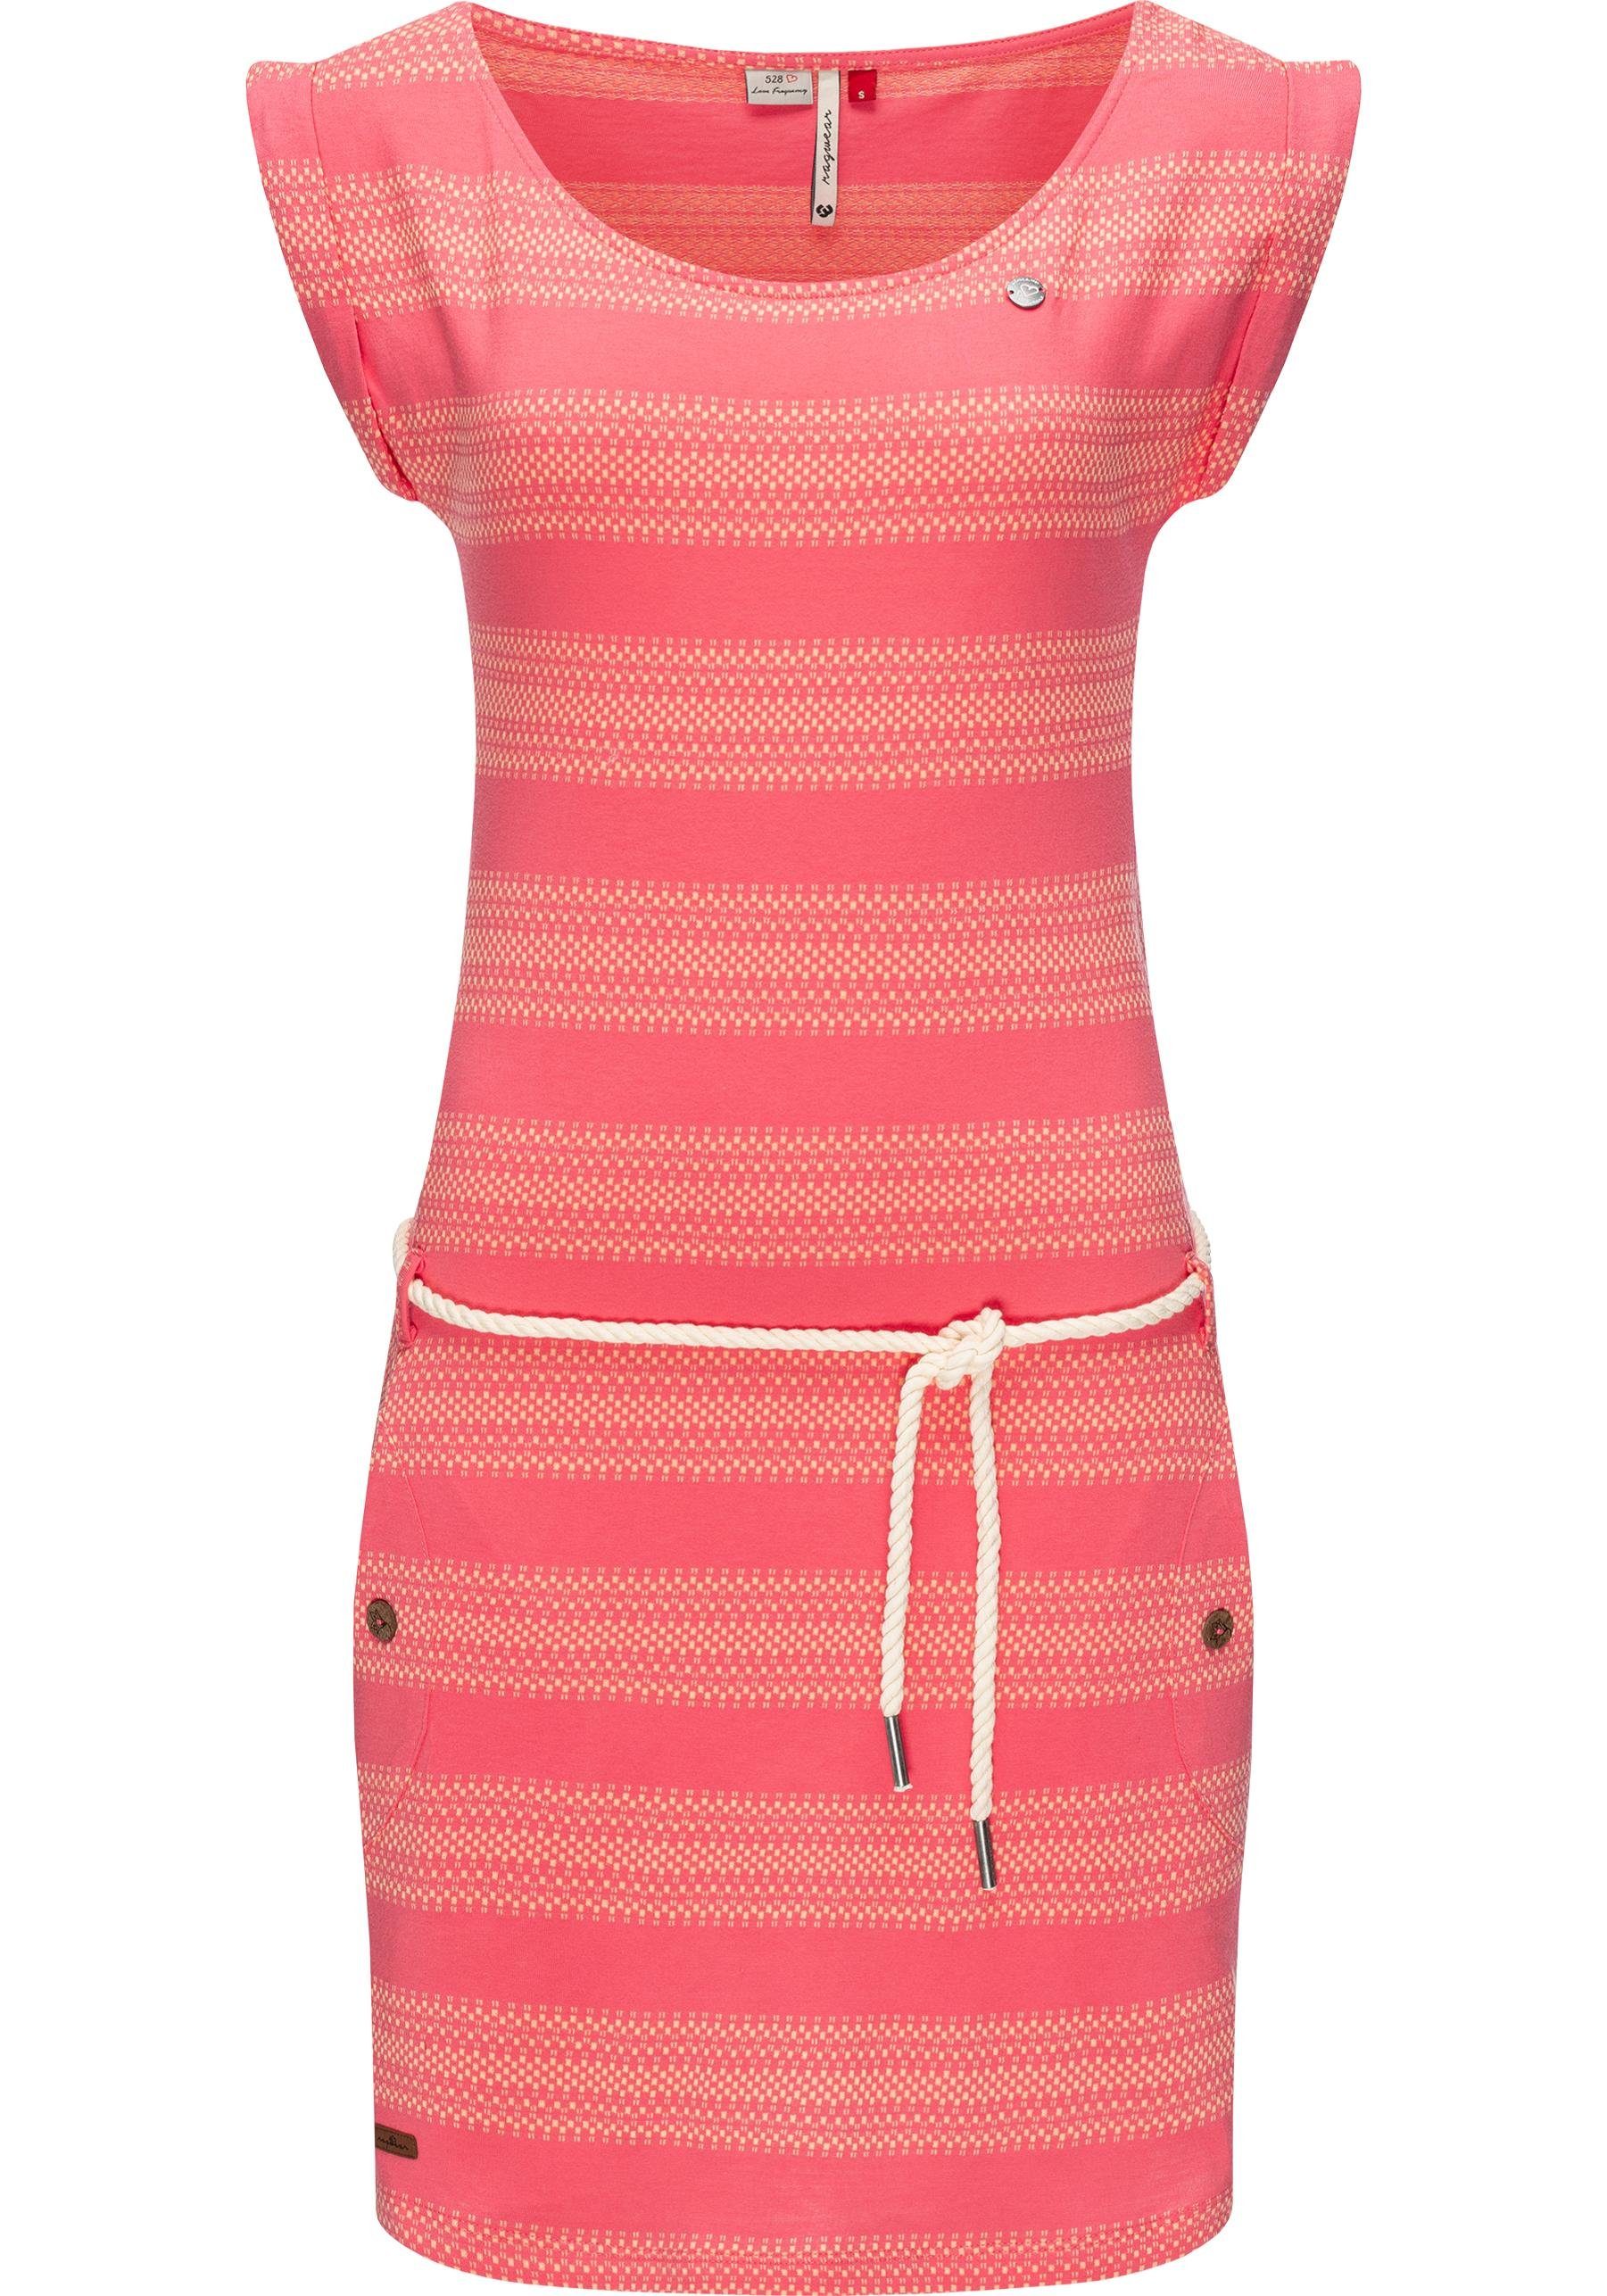 Ragwear Sommerkleid Tag Blockstripes Intl. leichtes Jersey Kleid mit Streifen-Muster